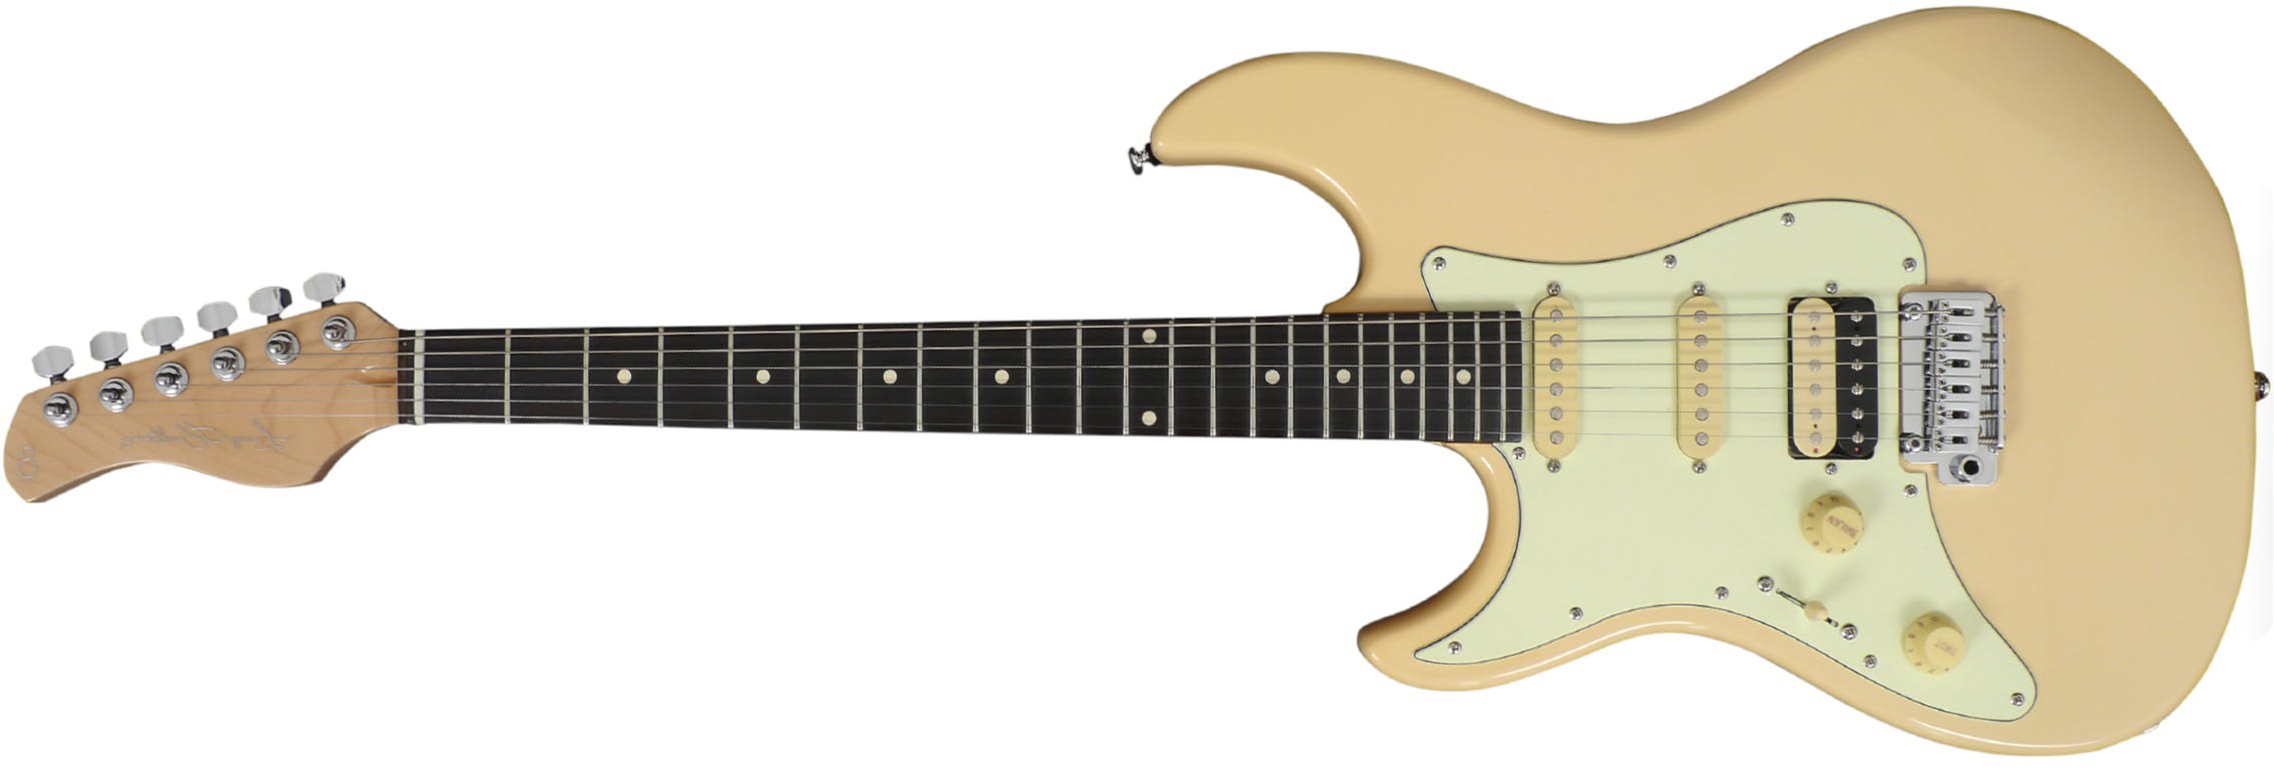 Sire Larry Carlton S3 Lh Signature Gaucher Hss Trem Rw - Vintage White - Linkshandige elektrische gitaar - Main picture